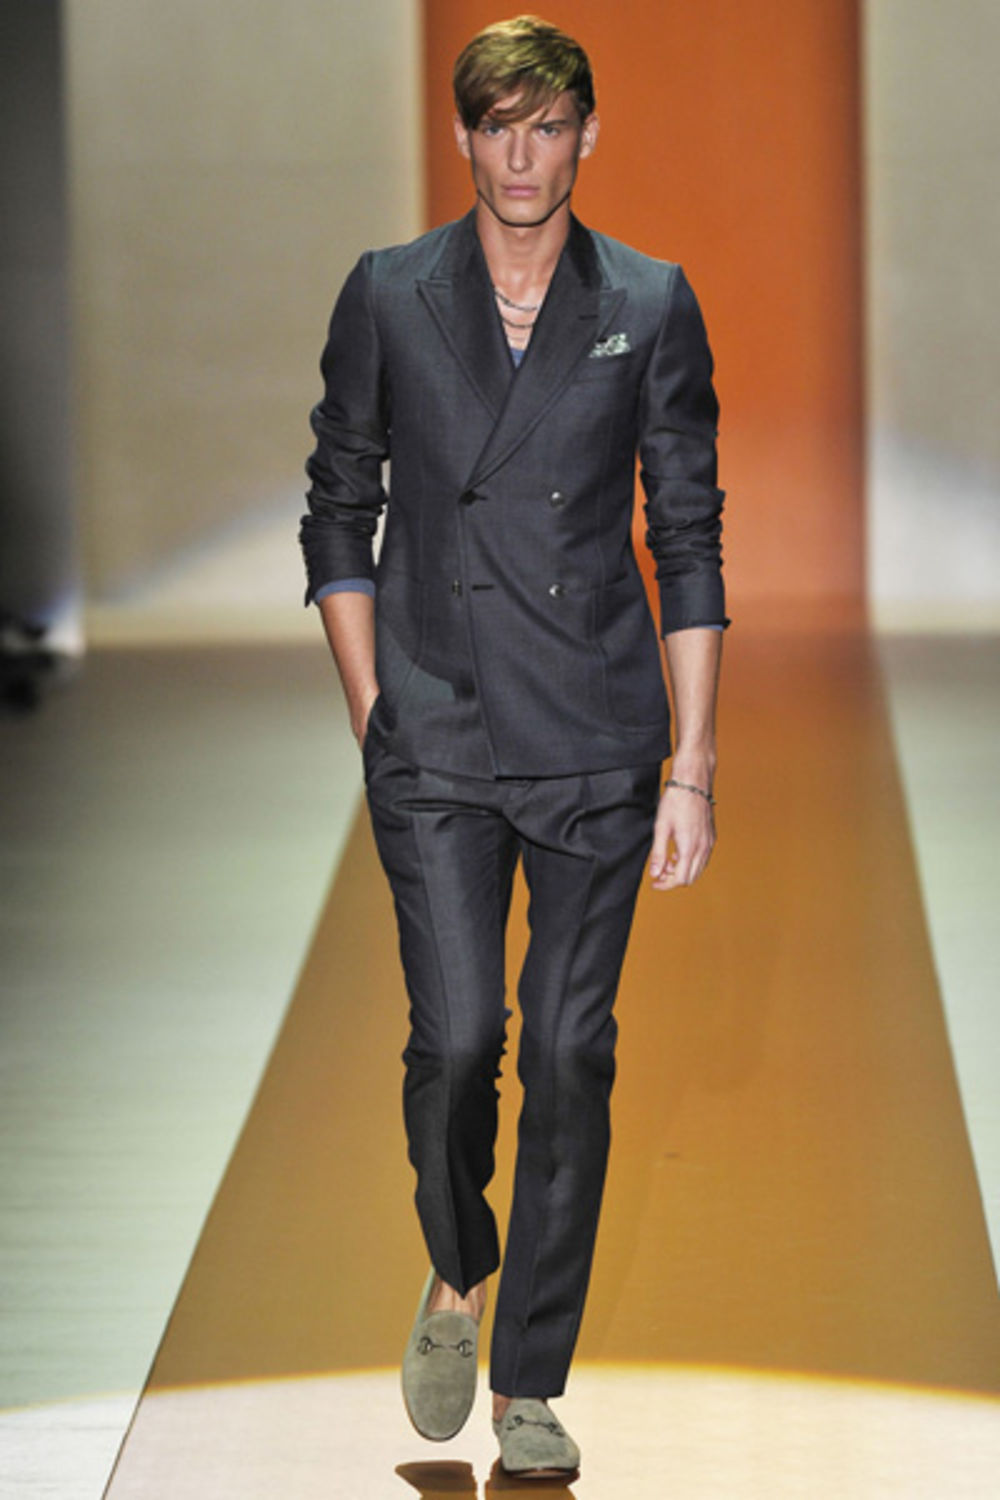 Trenutno najtraženiji i najplaćeniji srpski model, Nikola Jovanović, zaštitno je lice modne imperije Gucci.